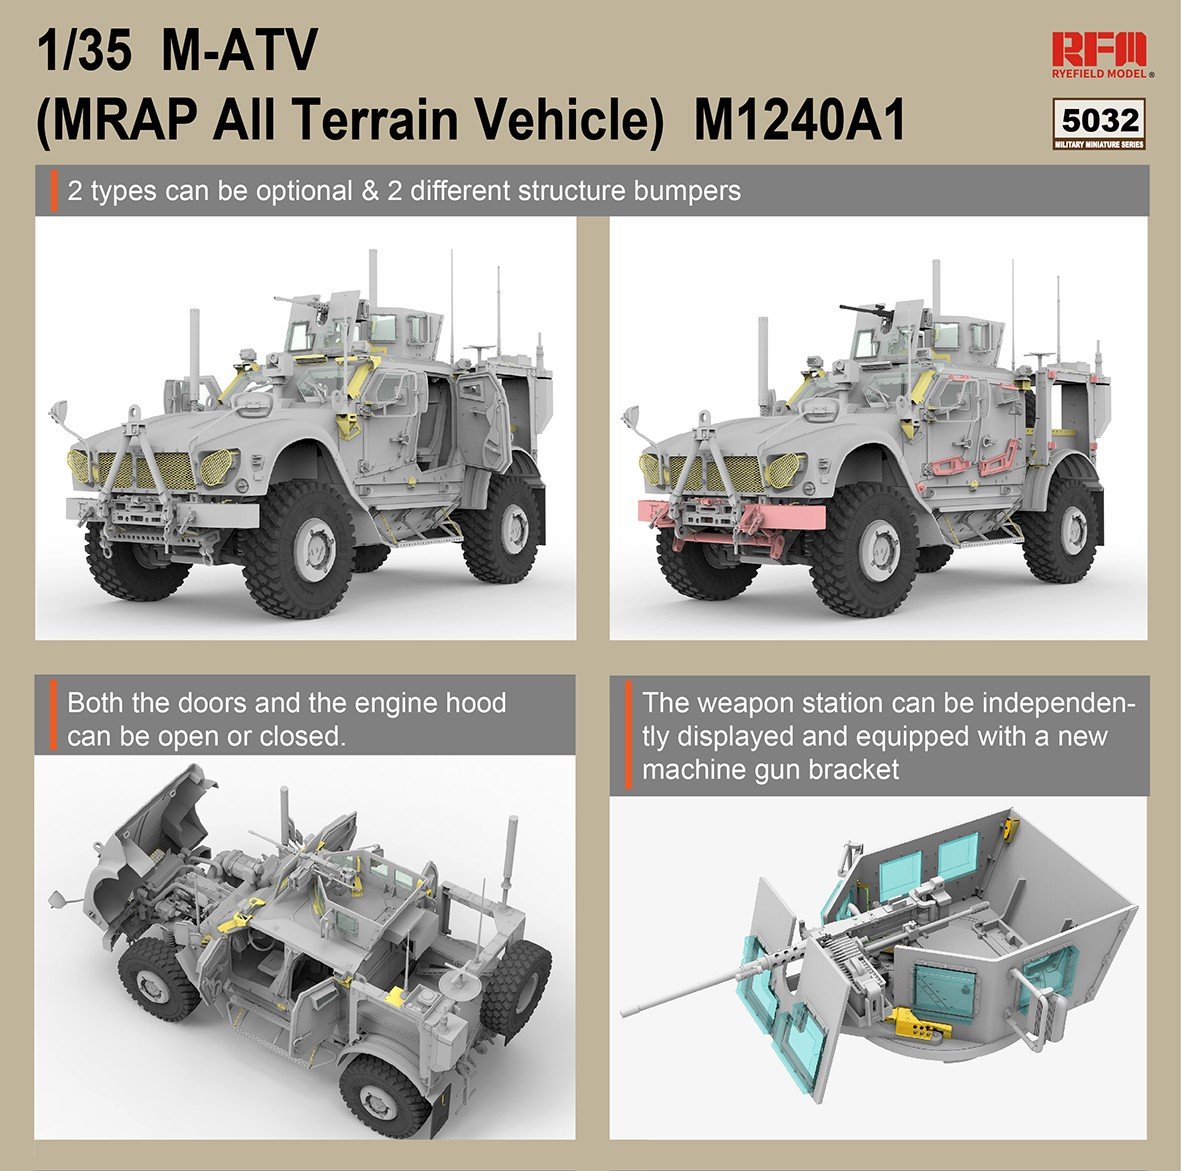 1/35 M1240A1 M-ATV - Click Image to Close